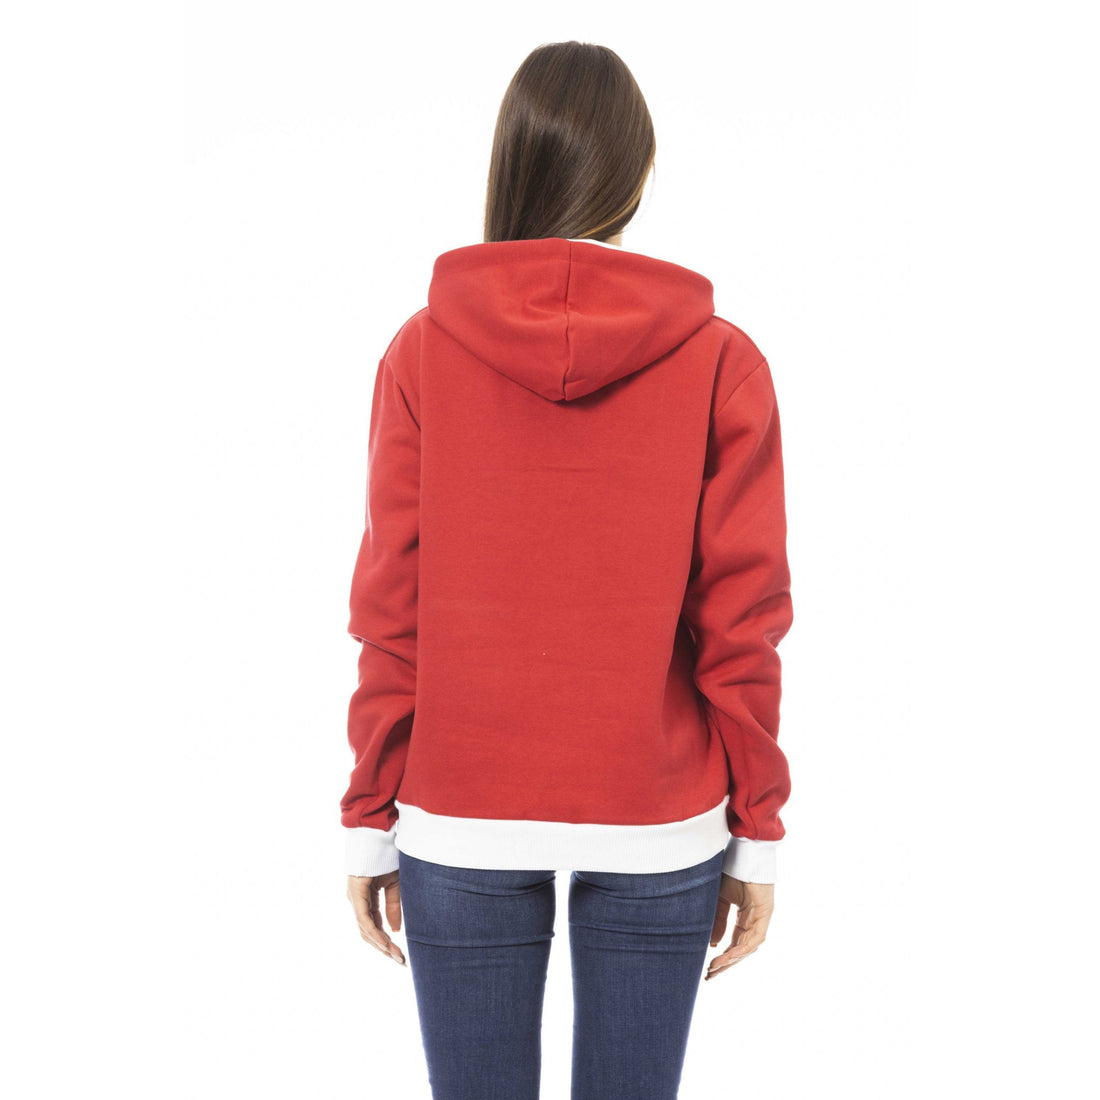 Baldinini Trend Red Cotton Sweater